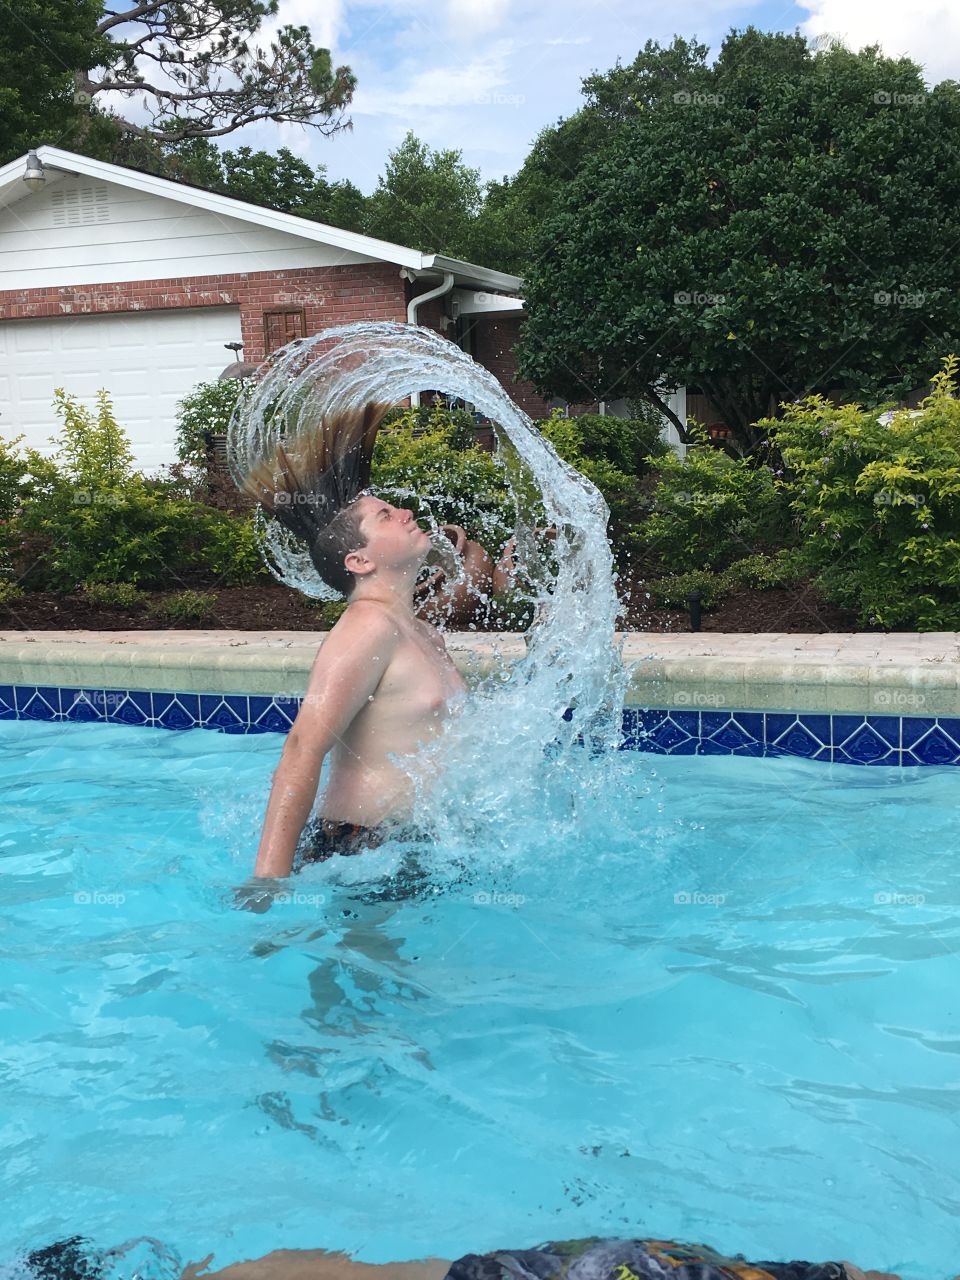 Summertime pool fun, flipping hair, water trail, splashing